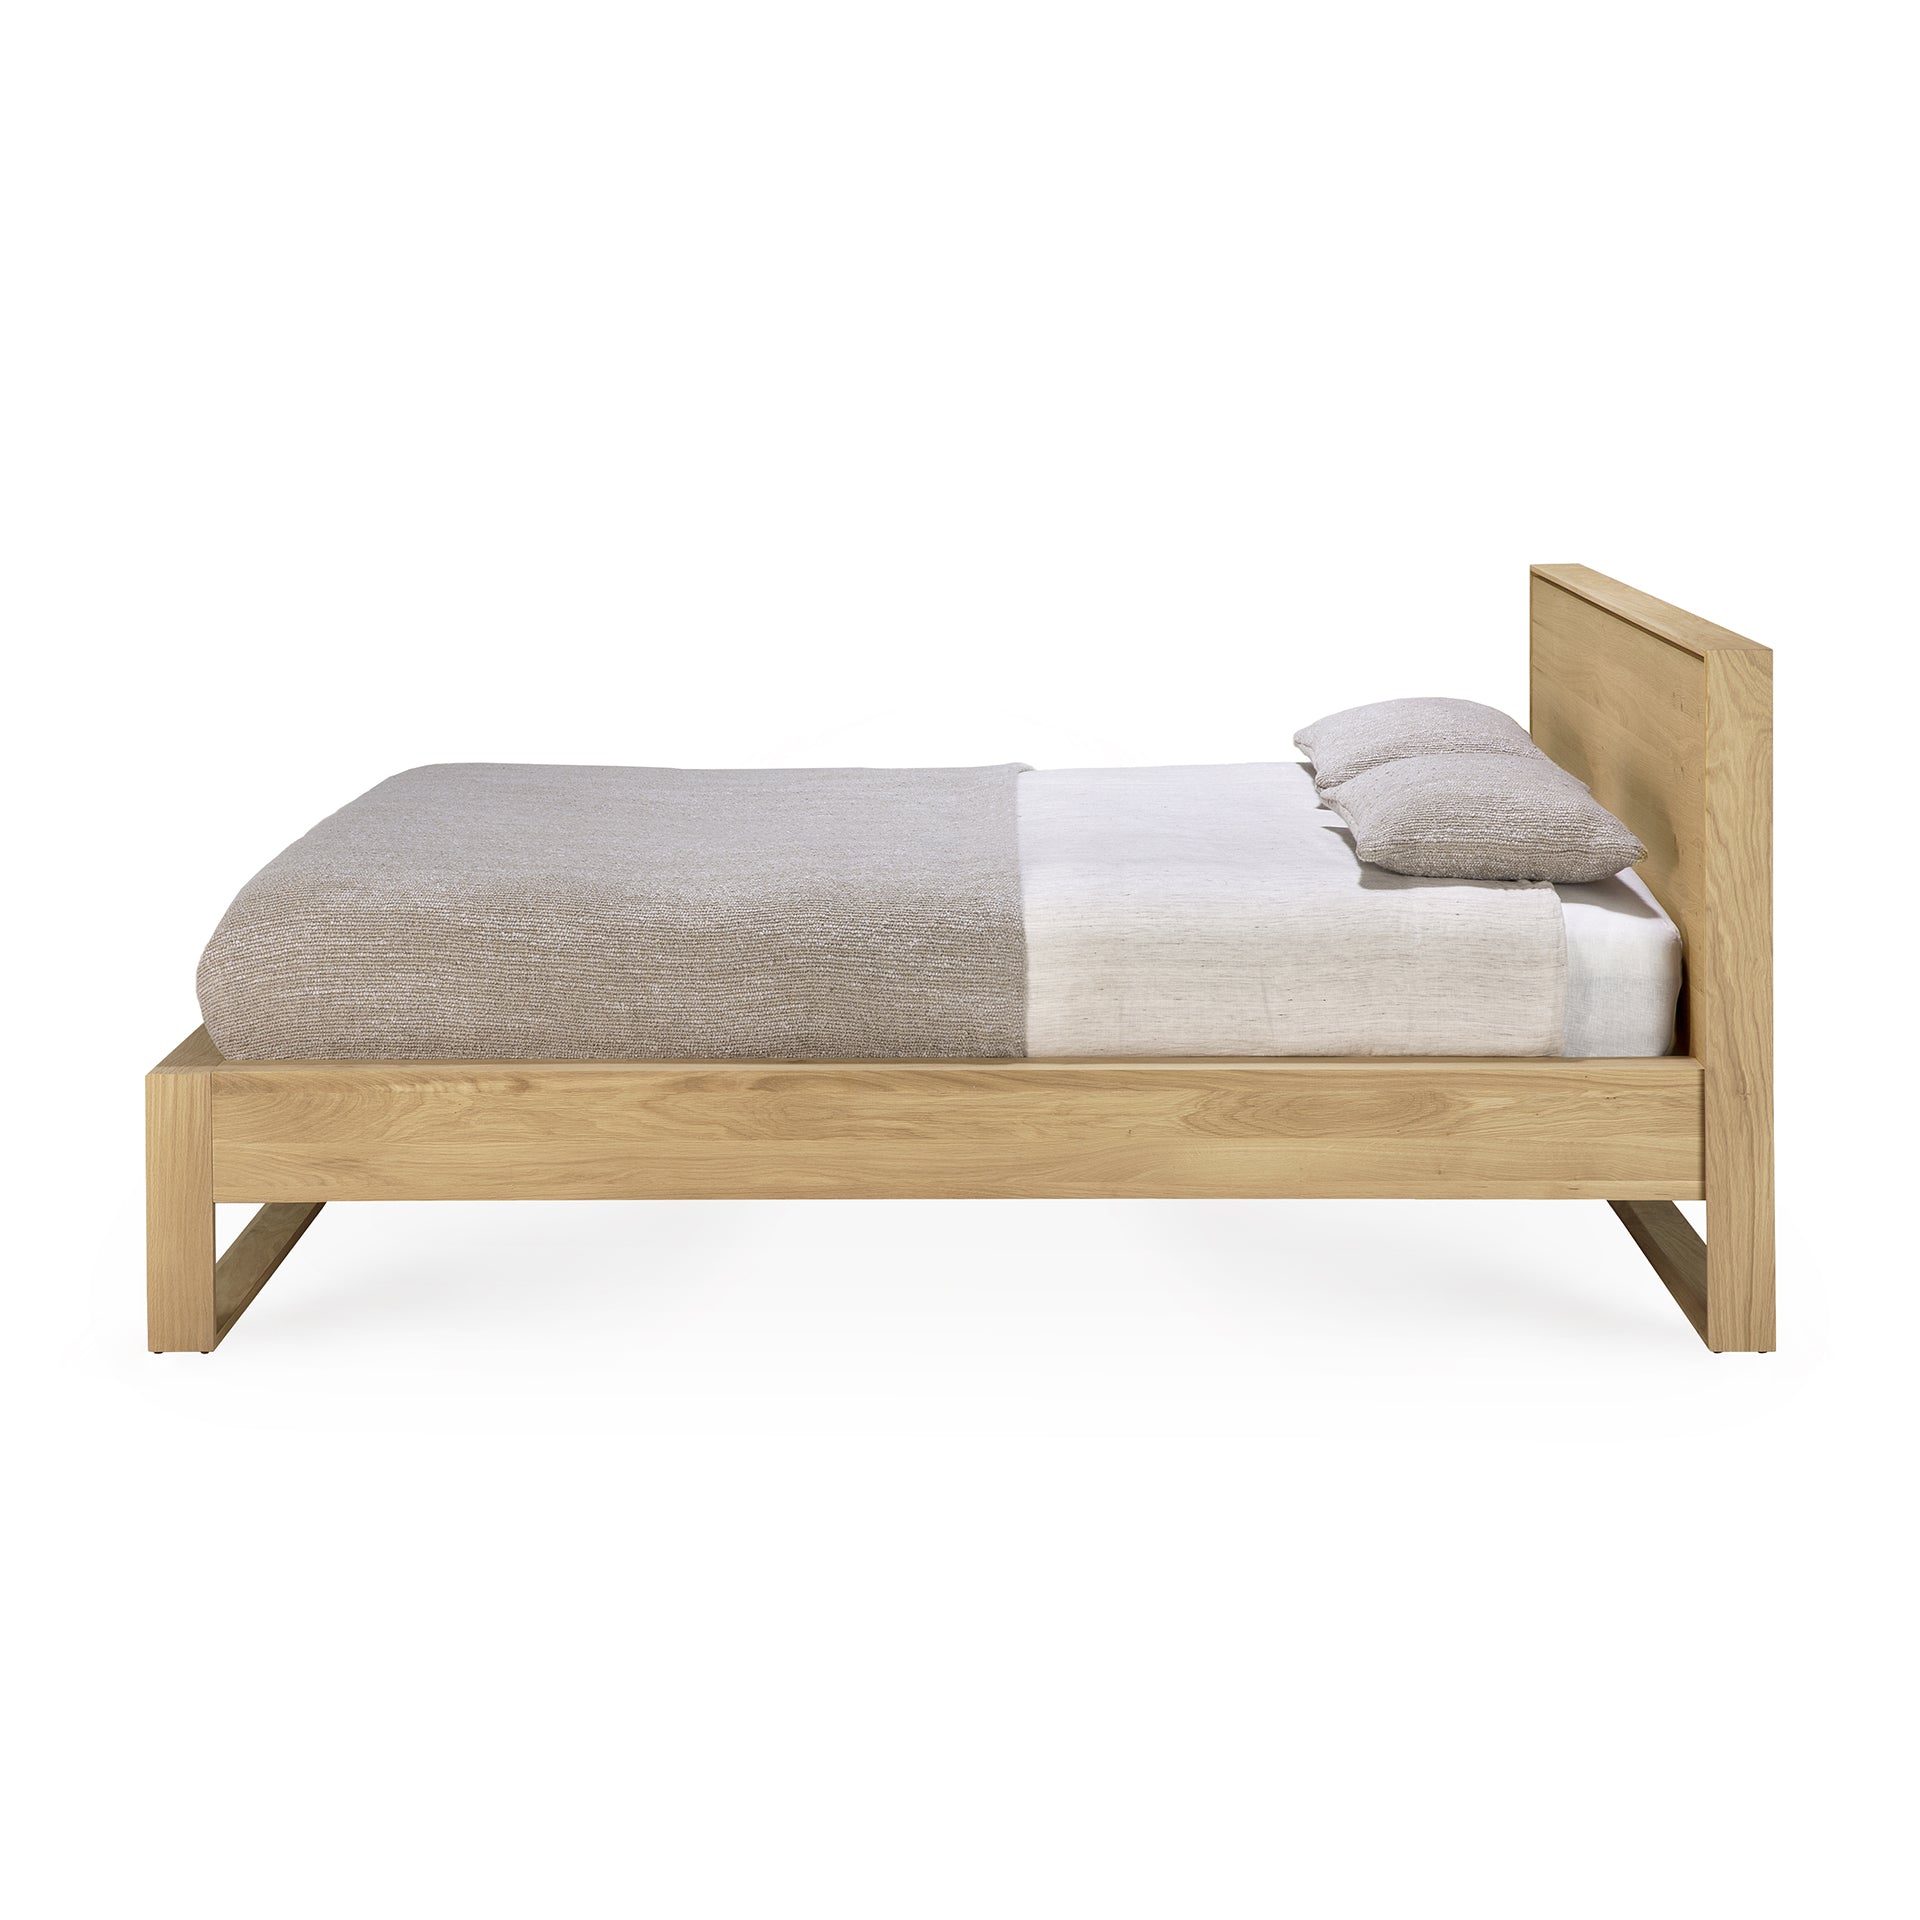 Ethnicraft Nordic II Oak Bed